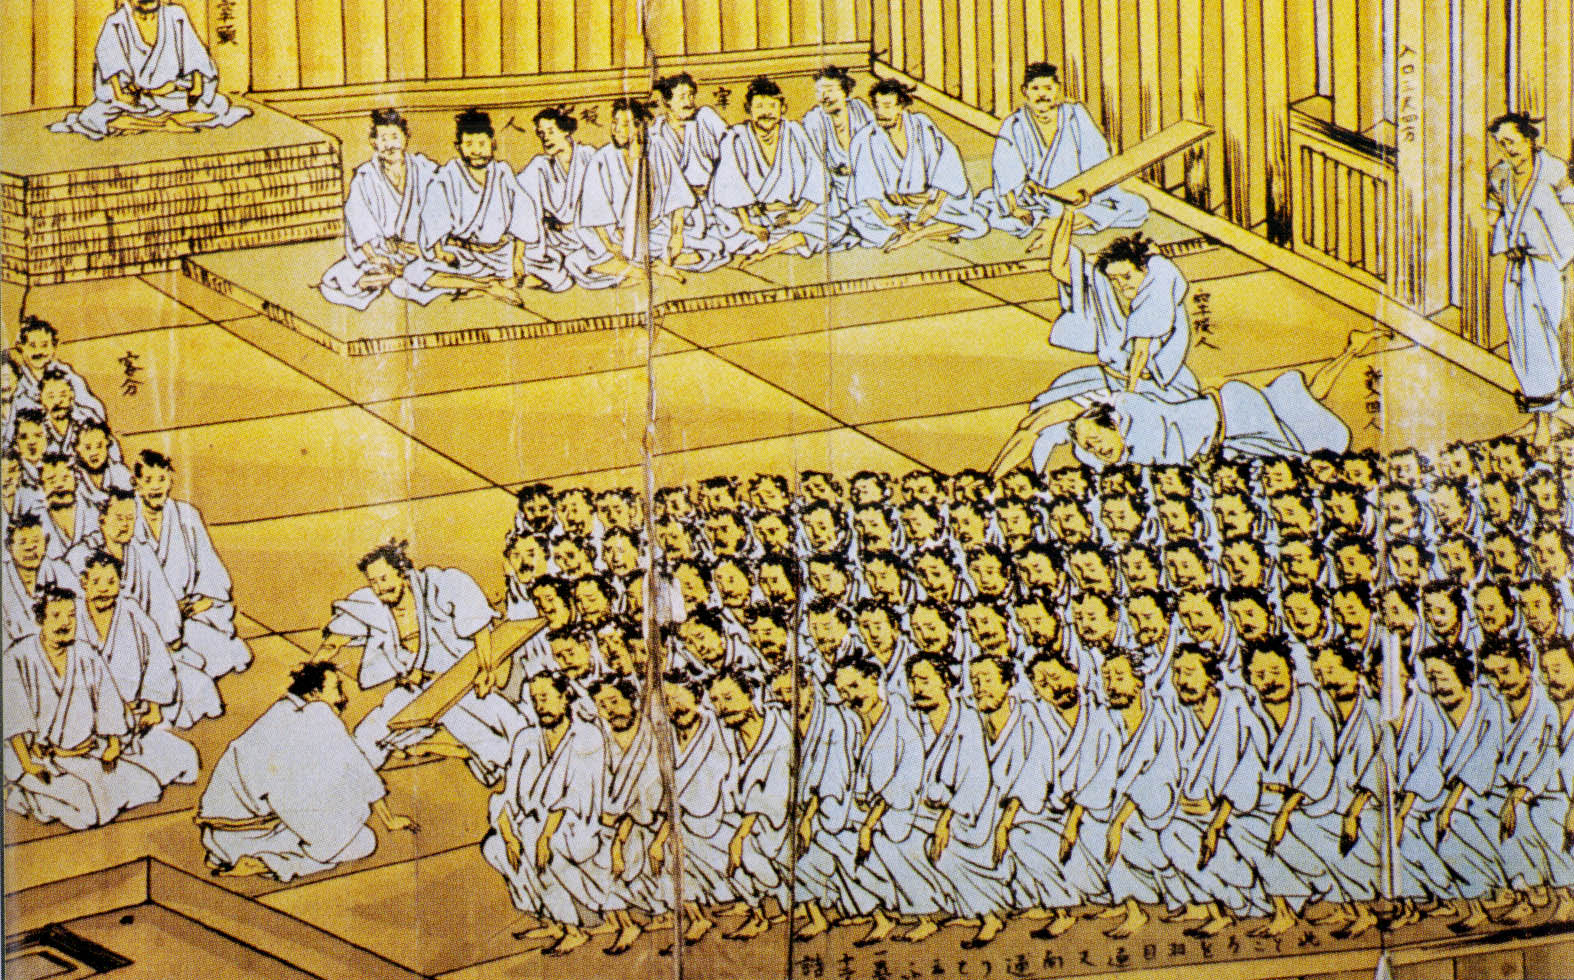 江戸時代 水戸藩は百姓一揆に強硬な姿勢で臨み刑は過酷であった - ふるさとは誰にもある。そこには先人の足跡、伝承されたものがある。つくばには